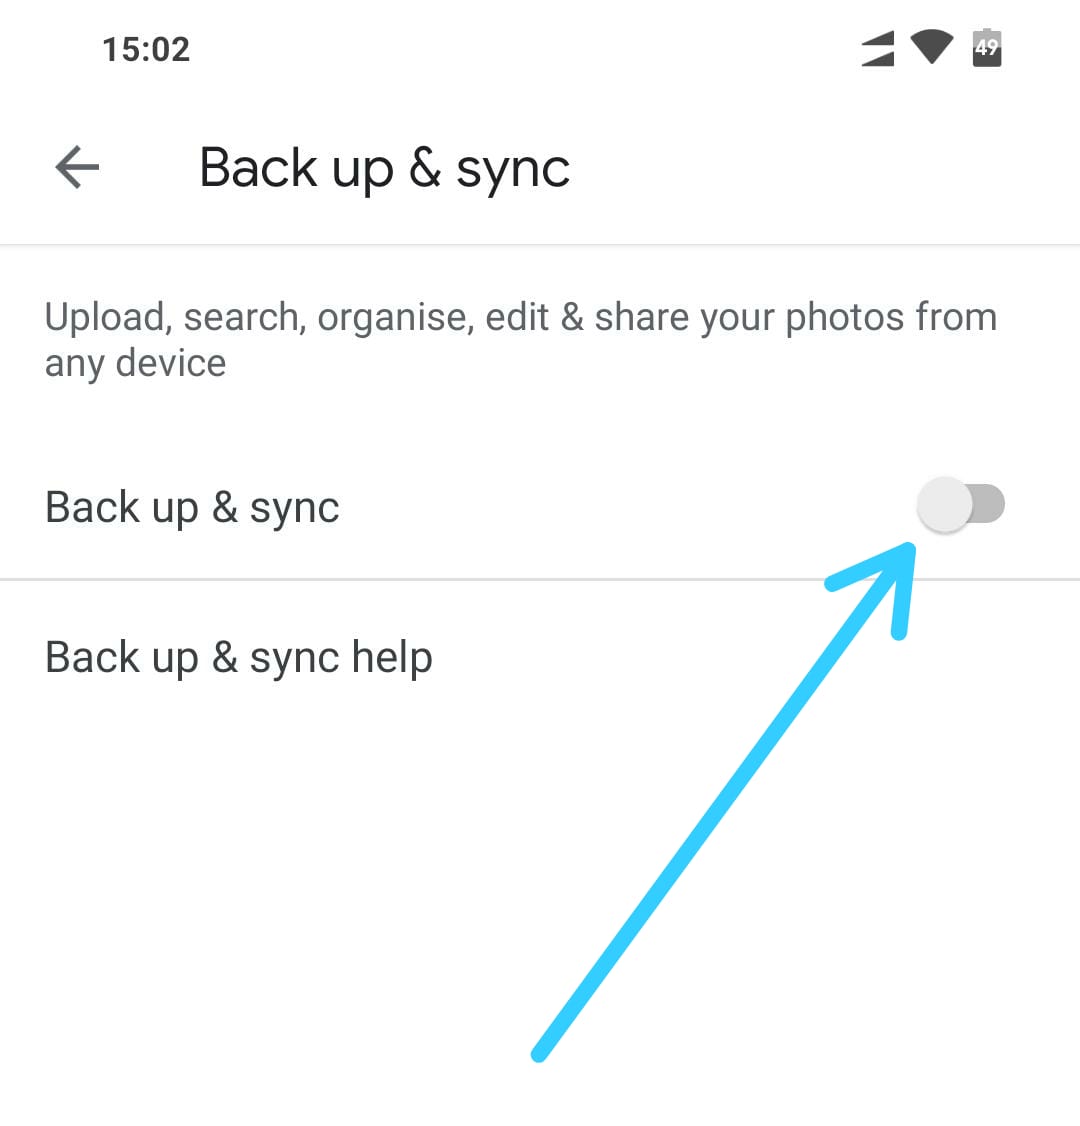 google backup and sync mac